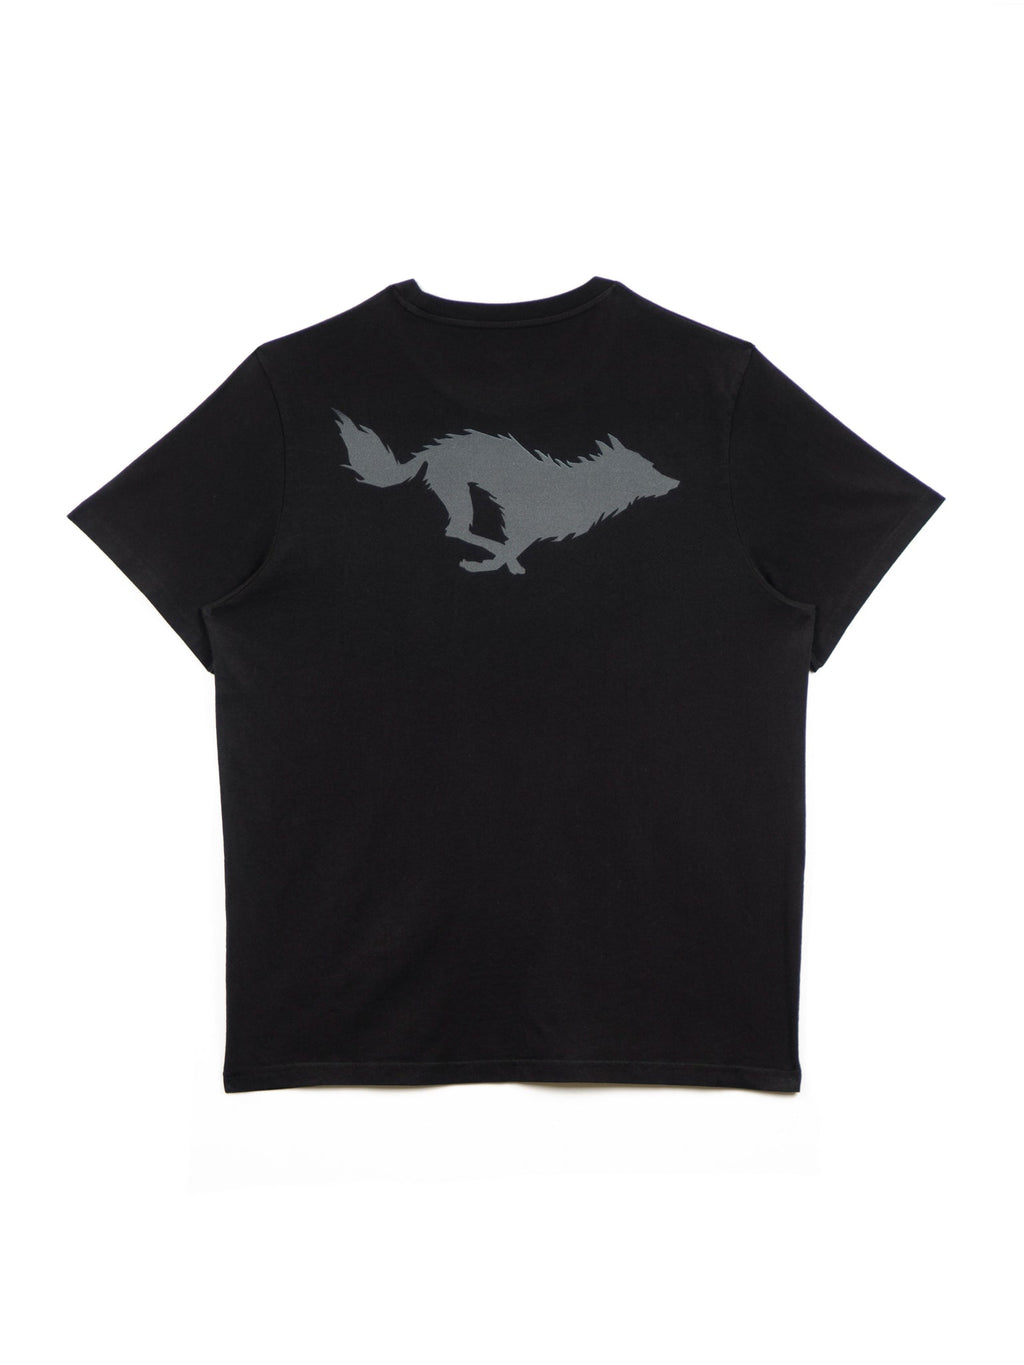 Lobo Black/Grey T-Shirt